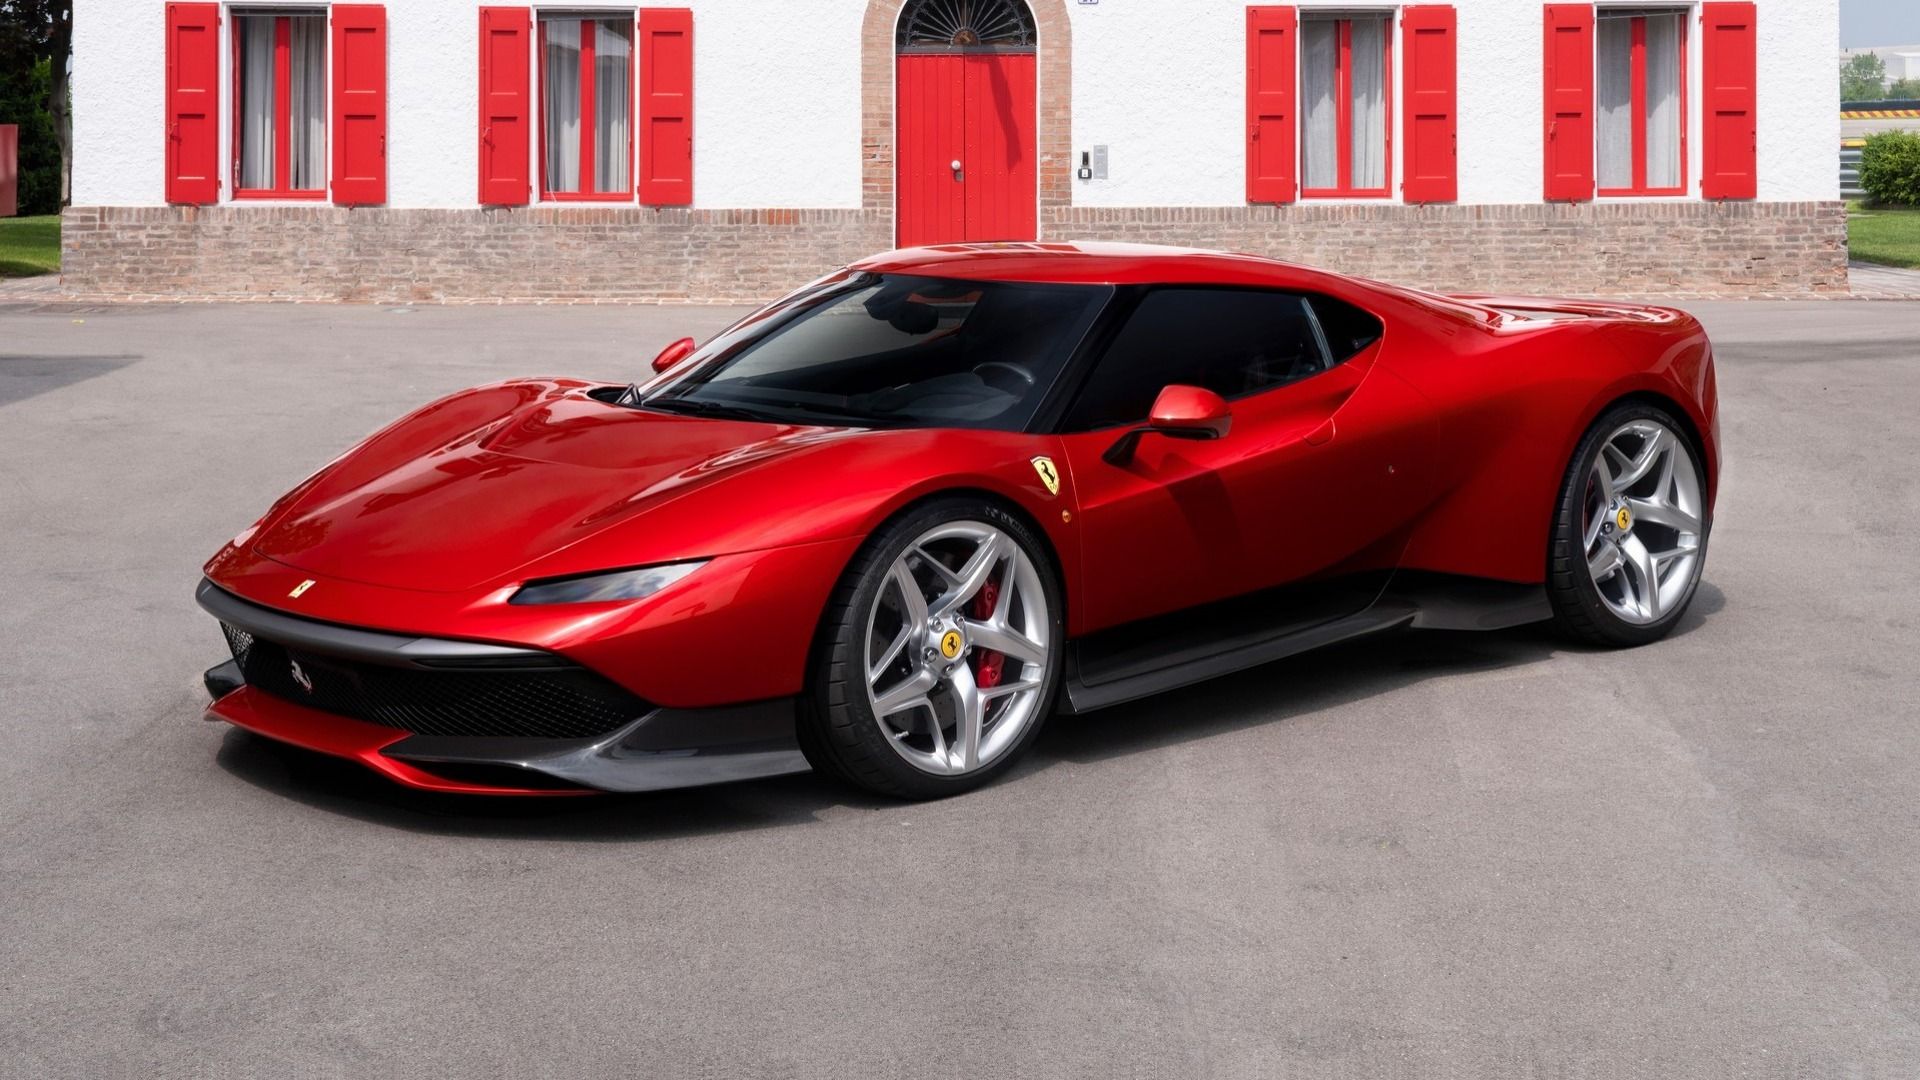 Siêu xe Ferrari SP38 duy nhất trên thế giới sắp trình làng 